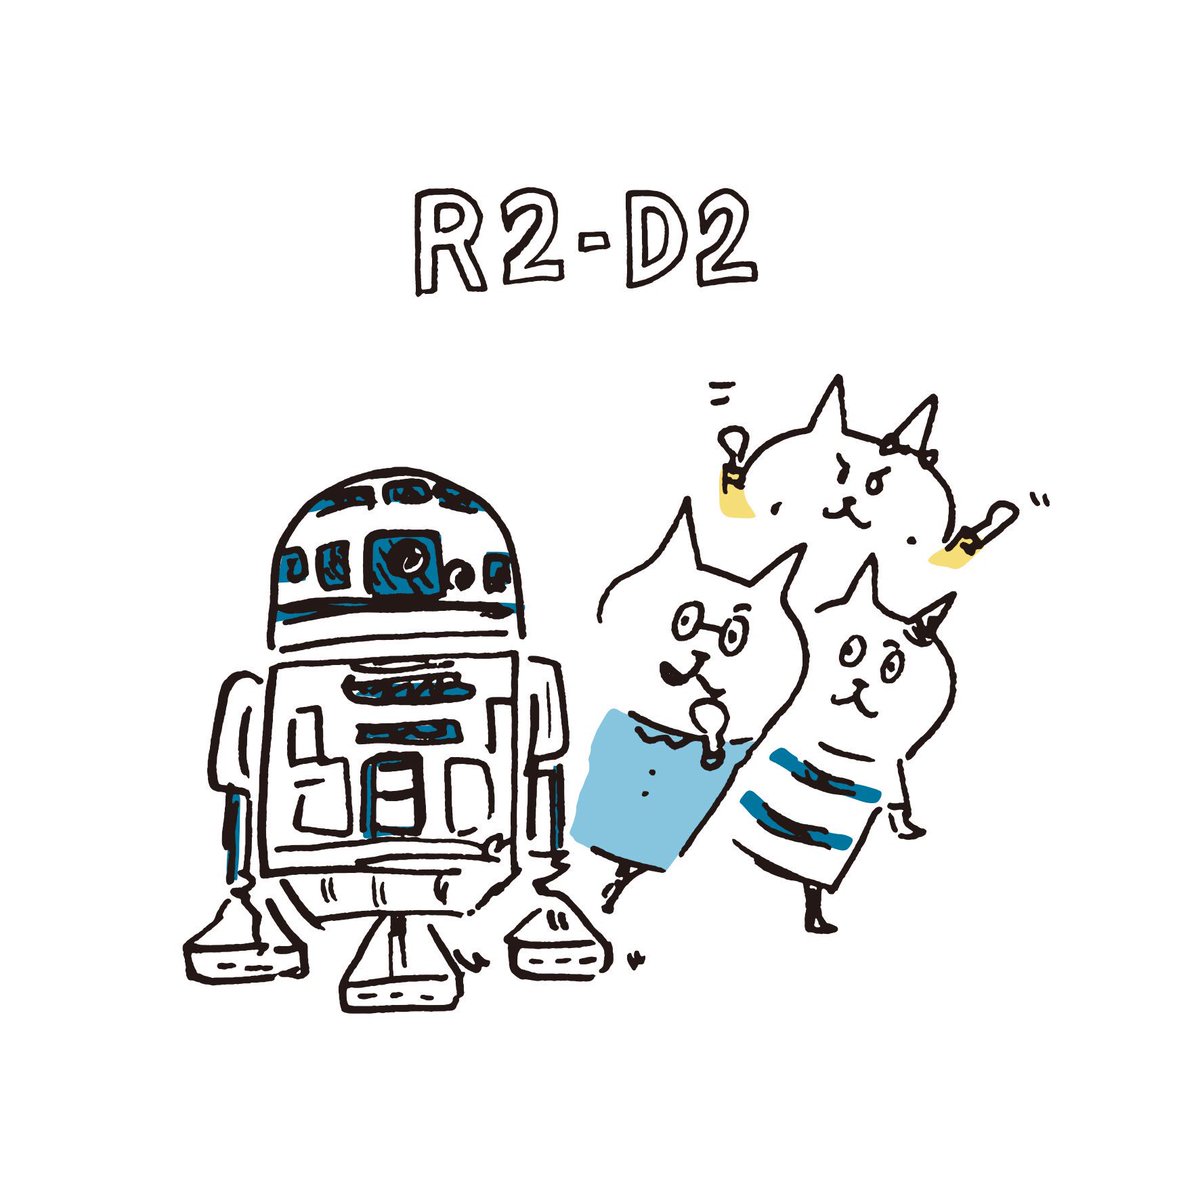 キタハラケンタ Sur Twitter リクエストをいただいた ゆる描きr2 D2と 謎の生き物 に興味津々の３匹 R2d2 スターウォーズ Starwars Thirdcat サードキャット サードさん キタハラケンタ イラストレーション